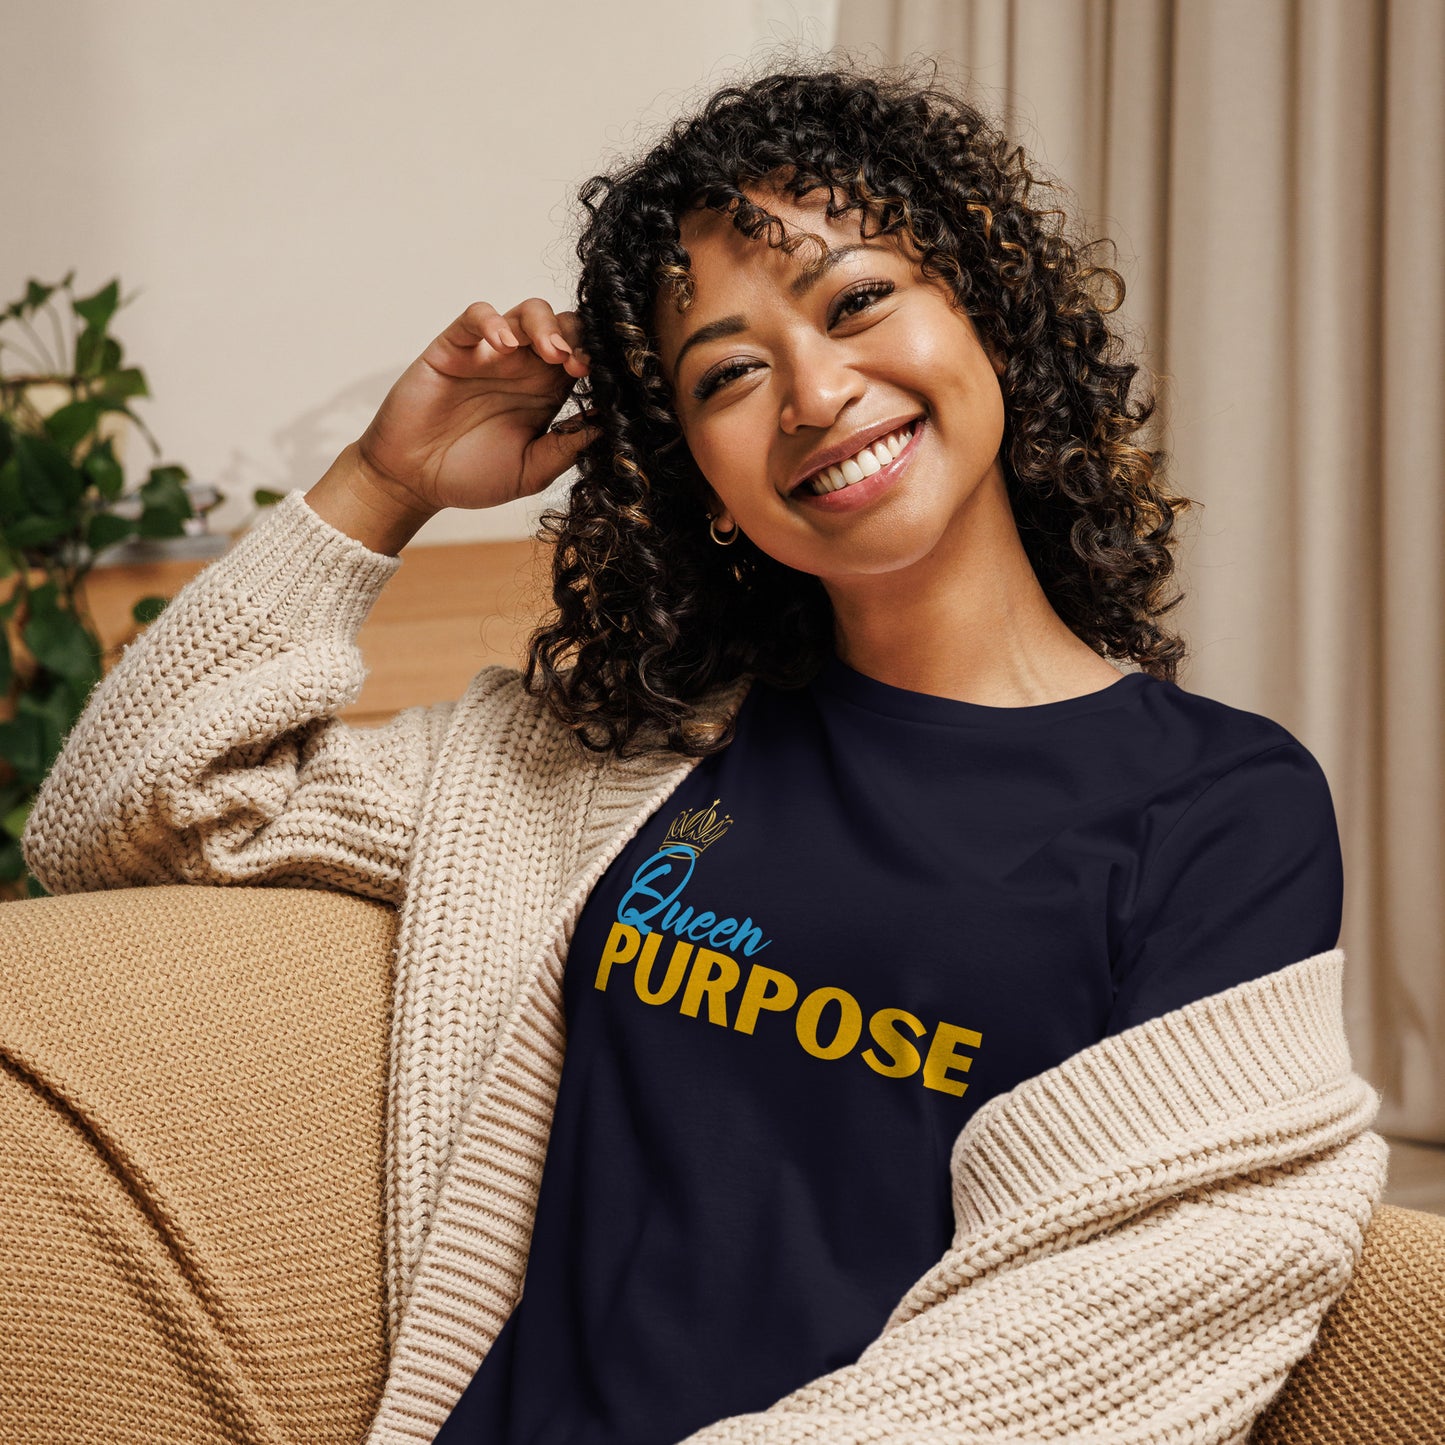 Queen Purpose Women's Relaxed T-Shirt